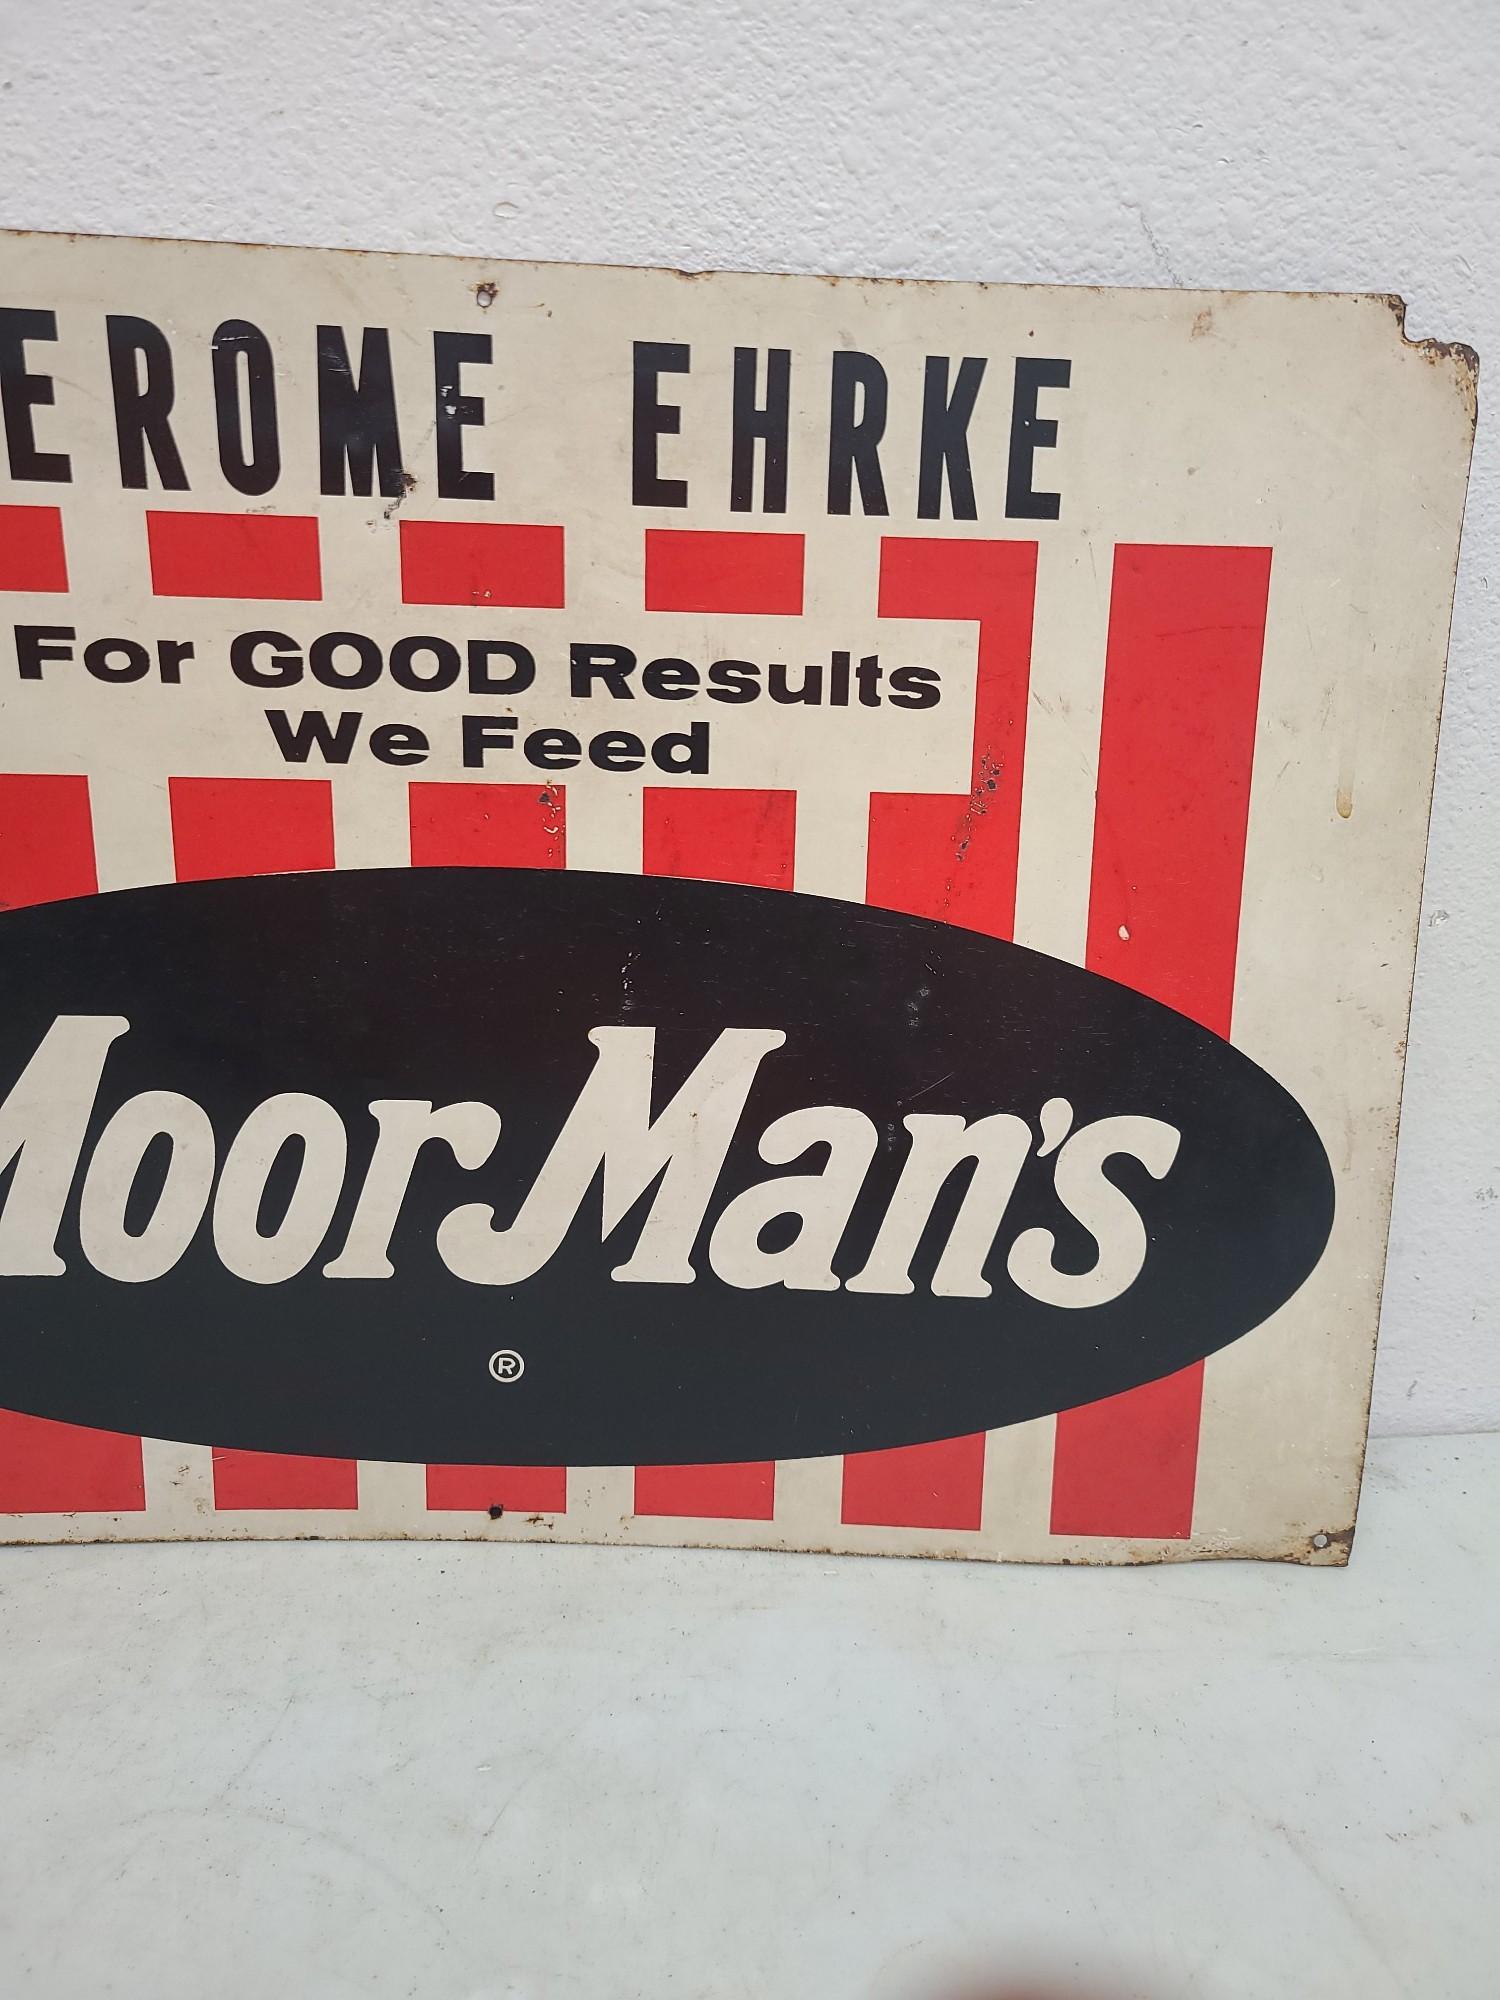 SST, Jerome  Ehrke Moor Man's